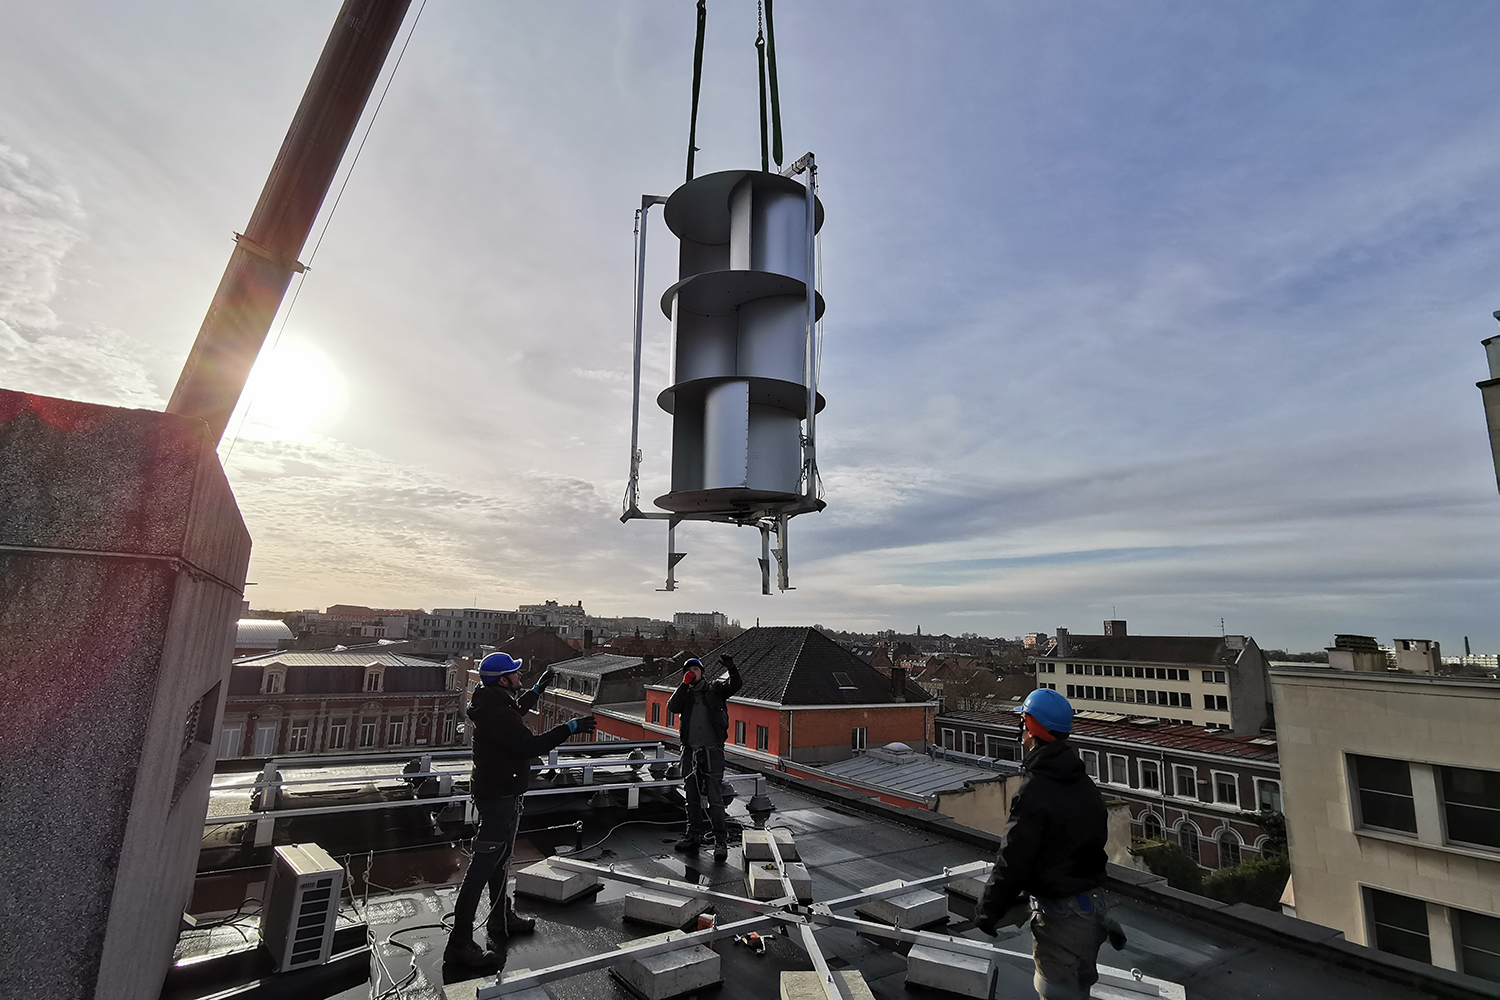 Le 10 décembre dernier, Unéole a installé une éolienne urbaine sur le toit de la médiathèque de Roubaix.